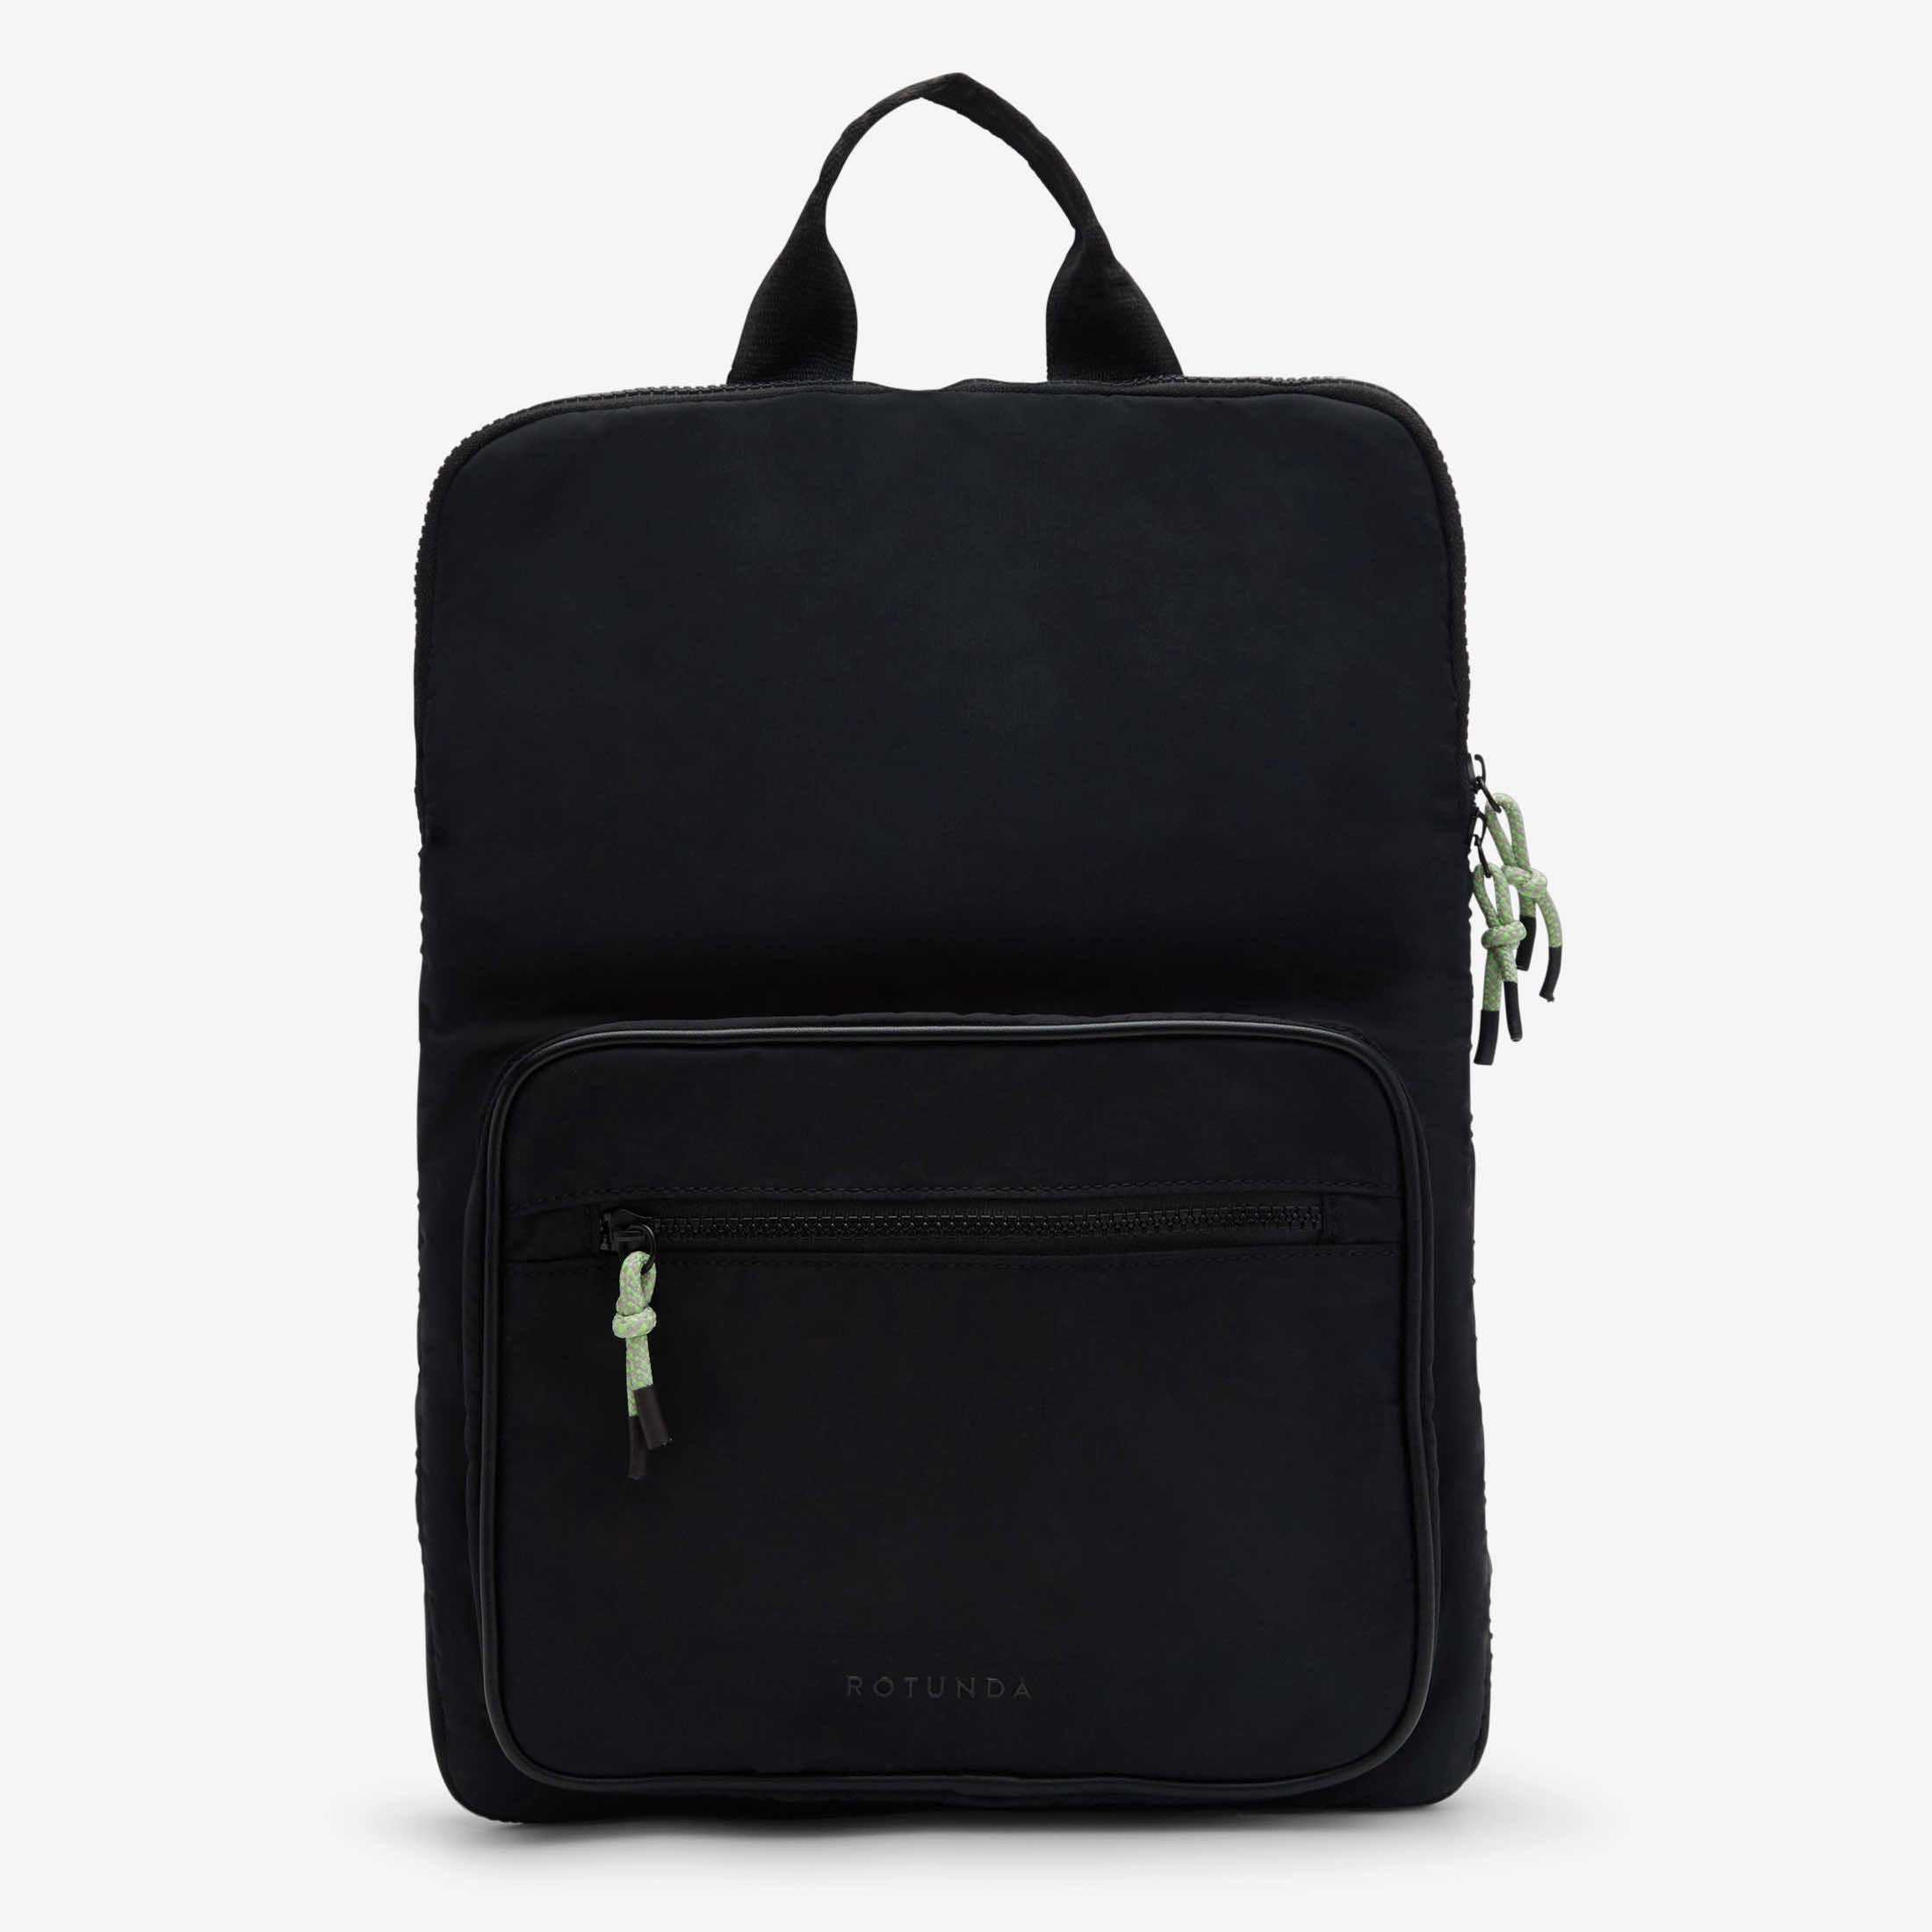 Entu Laptop Backpack Black